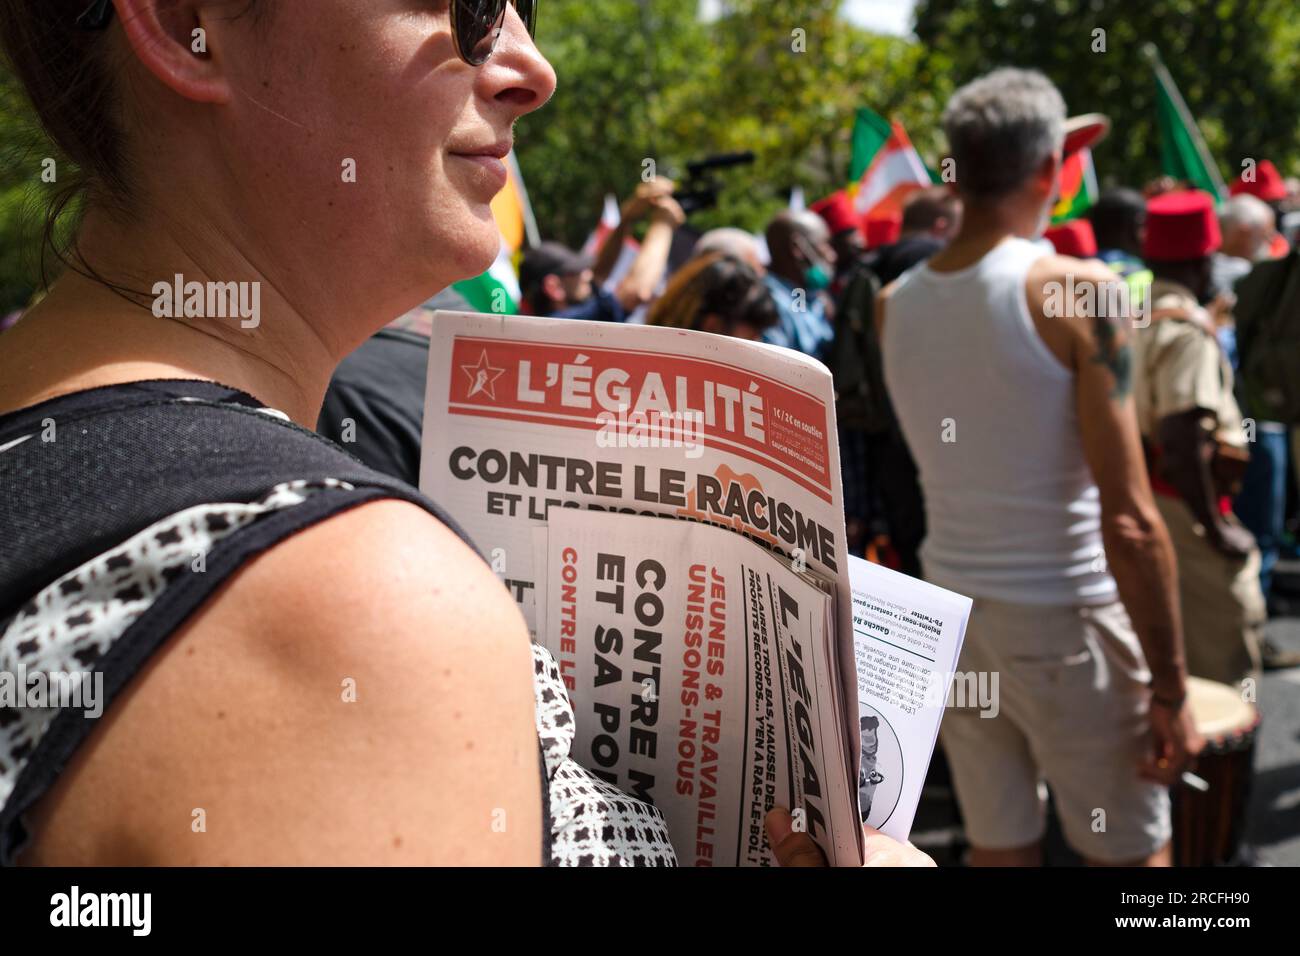 Des enfants de tirailleurs et des sans papiers unis contre la loi Darmanin, ont défilé contre le racisme entre la Place Daumesnil et la Bastille Stockfoto